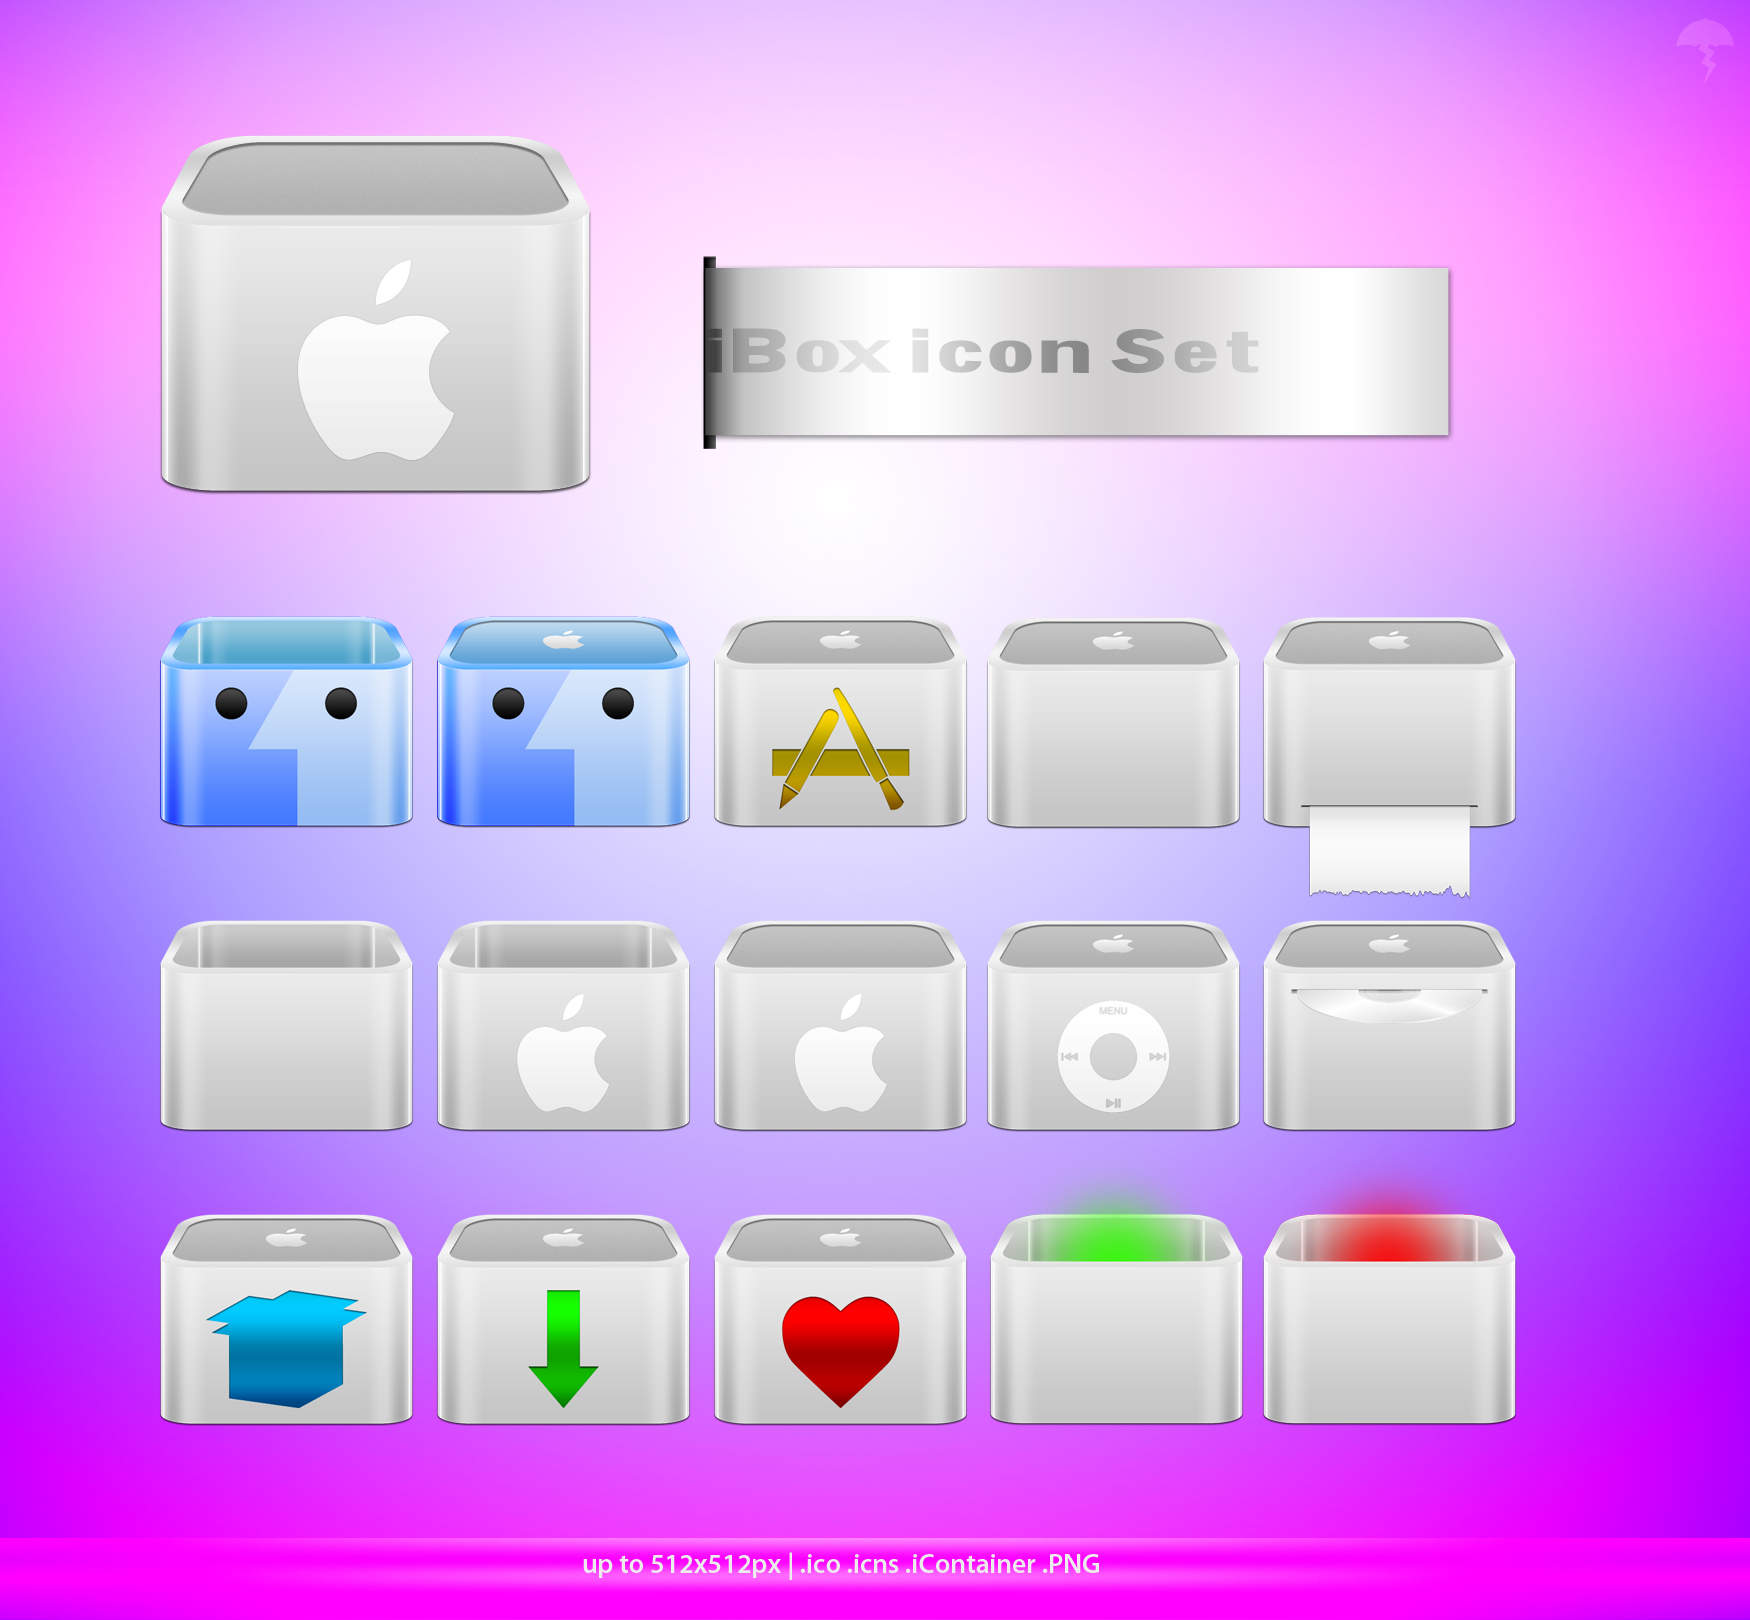 iBox icon set